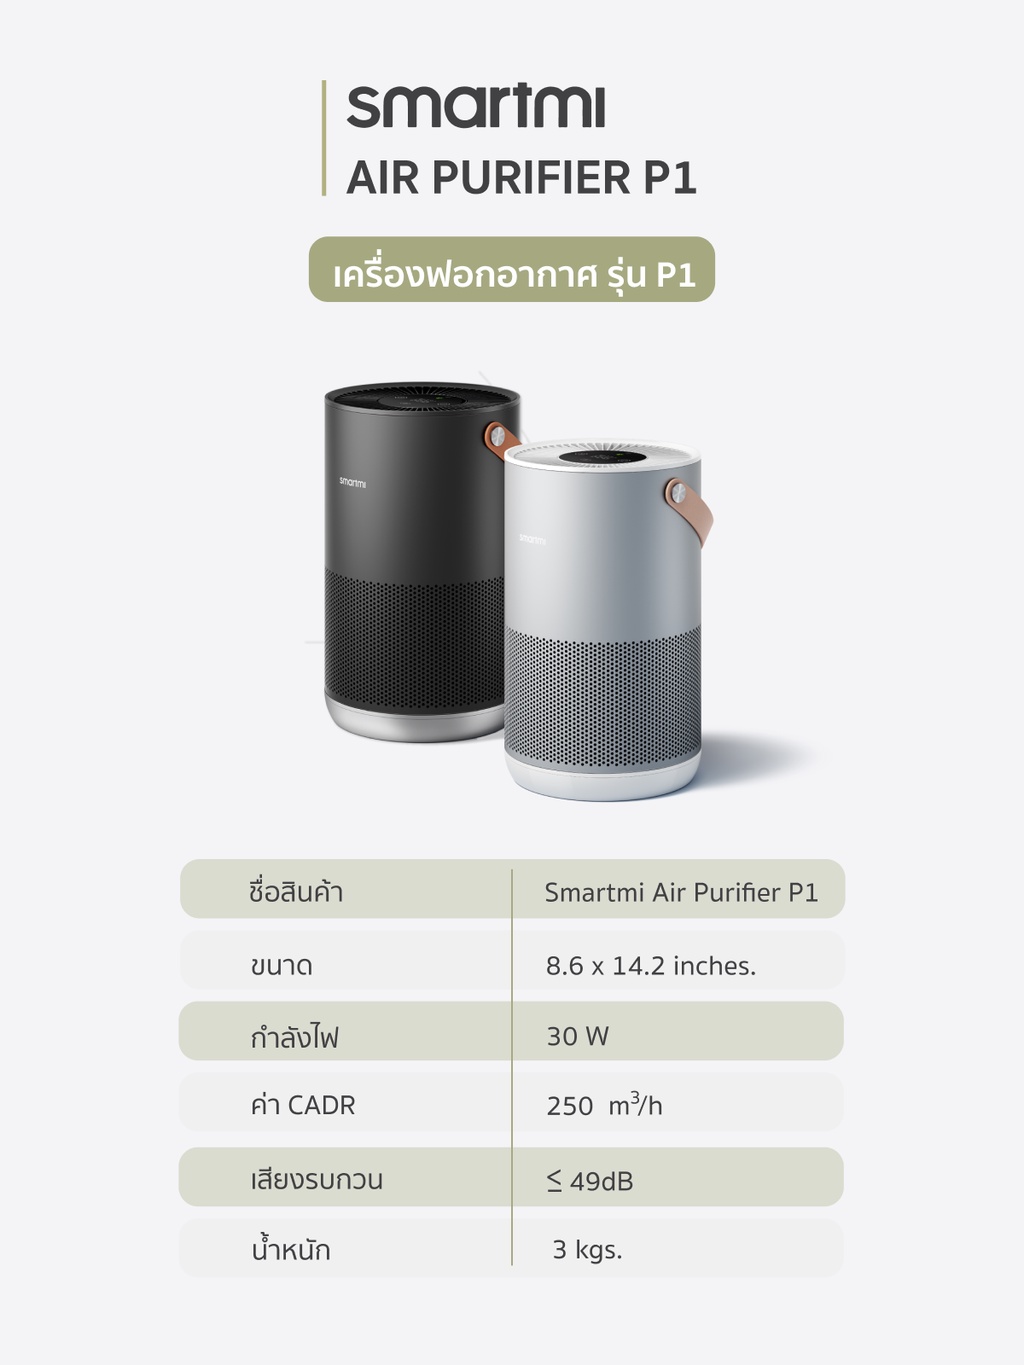 เกี่ยวกับสินค้า Smartmi Air Purifier รุ่น P1 เครื่องฟอกอากาศเคลื่อนย้ายสะดวก มีหูหิ้ว ทำจากอลูมิเนียม เซ็นเซอร์คู่ดักจับทั้ง PM2.5/PM10 (กรองละเอียดและกรองหยาบในตัวเดียว) จาก บริษัท Xiaomi ออกใบกำกับภาษีได้